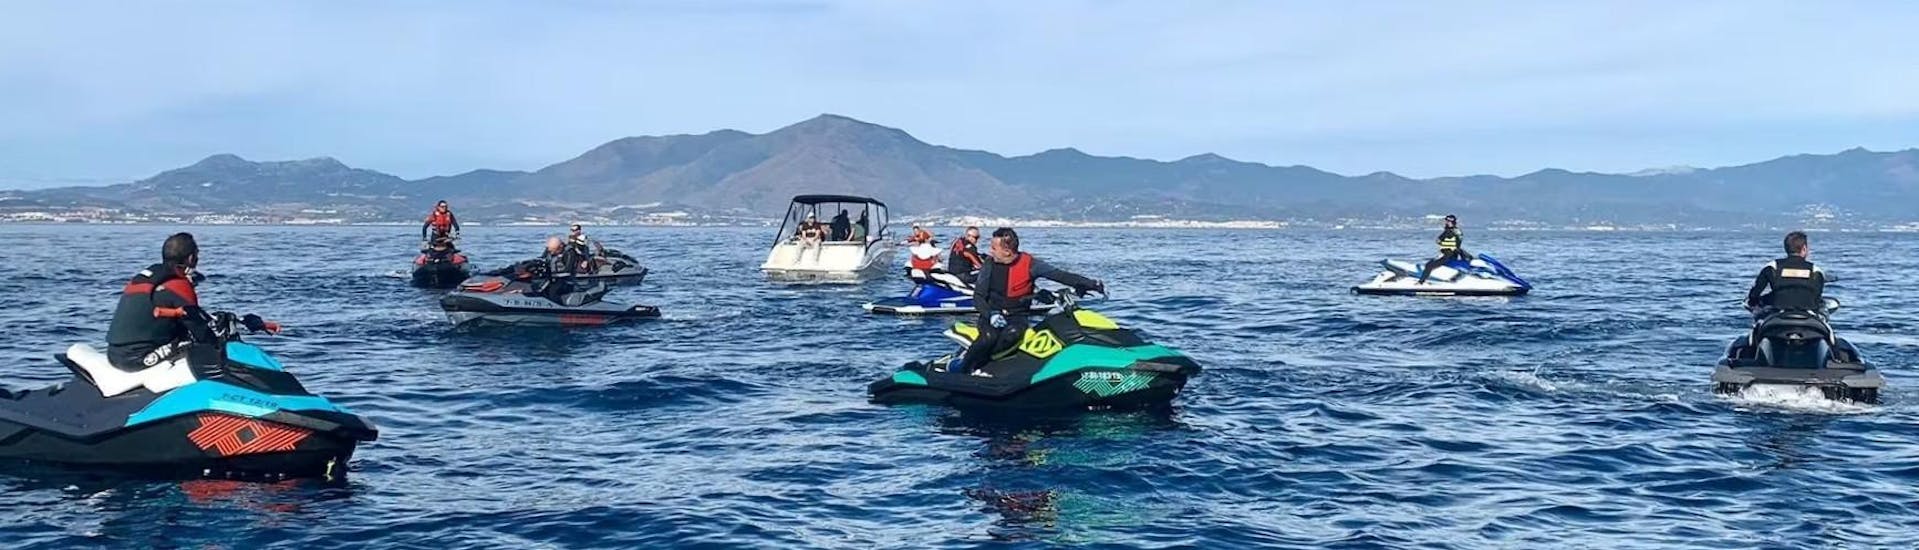 Participantes en un día soleado en la Costa del Sol en moto de agua durante un safari en moto de agua a Puerto Sotogrande con Marbella Jet Center.